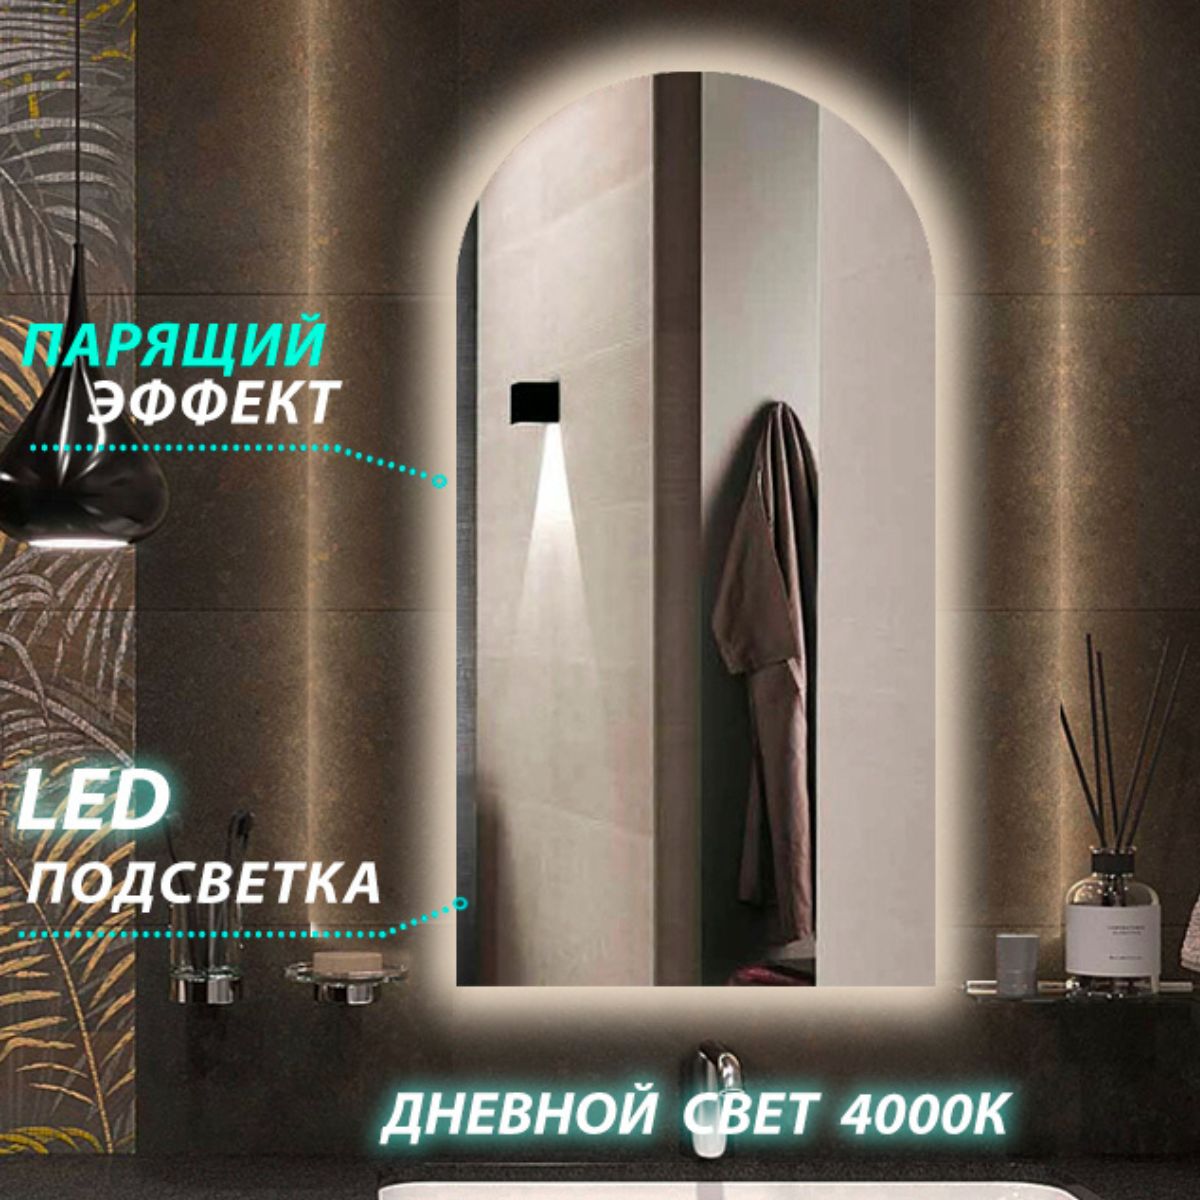 Зеркало настенное для ванной КерамаМане 55*110см с сенсорной нейтральной подсветкой 4000 К настенное зеркало боско багет большое